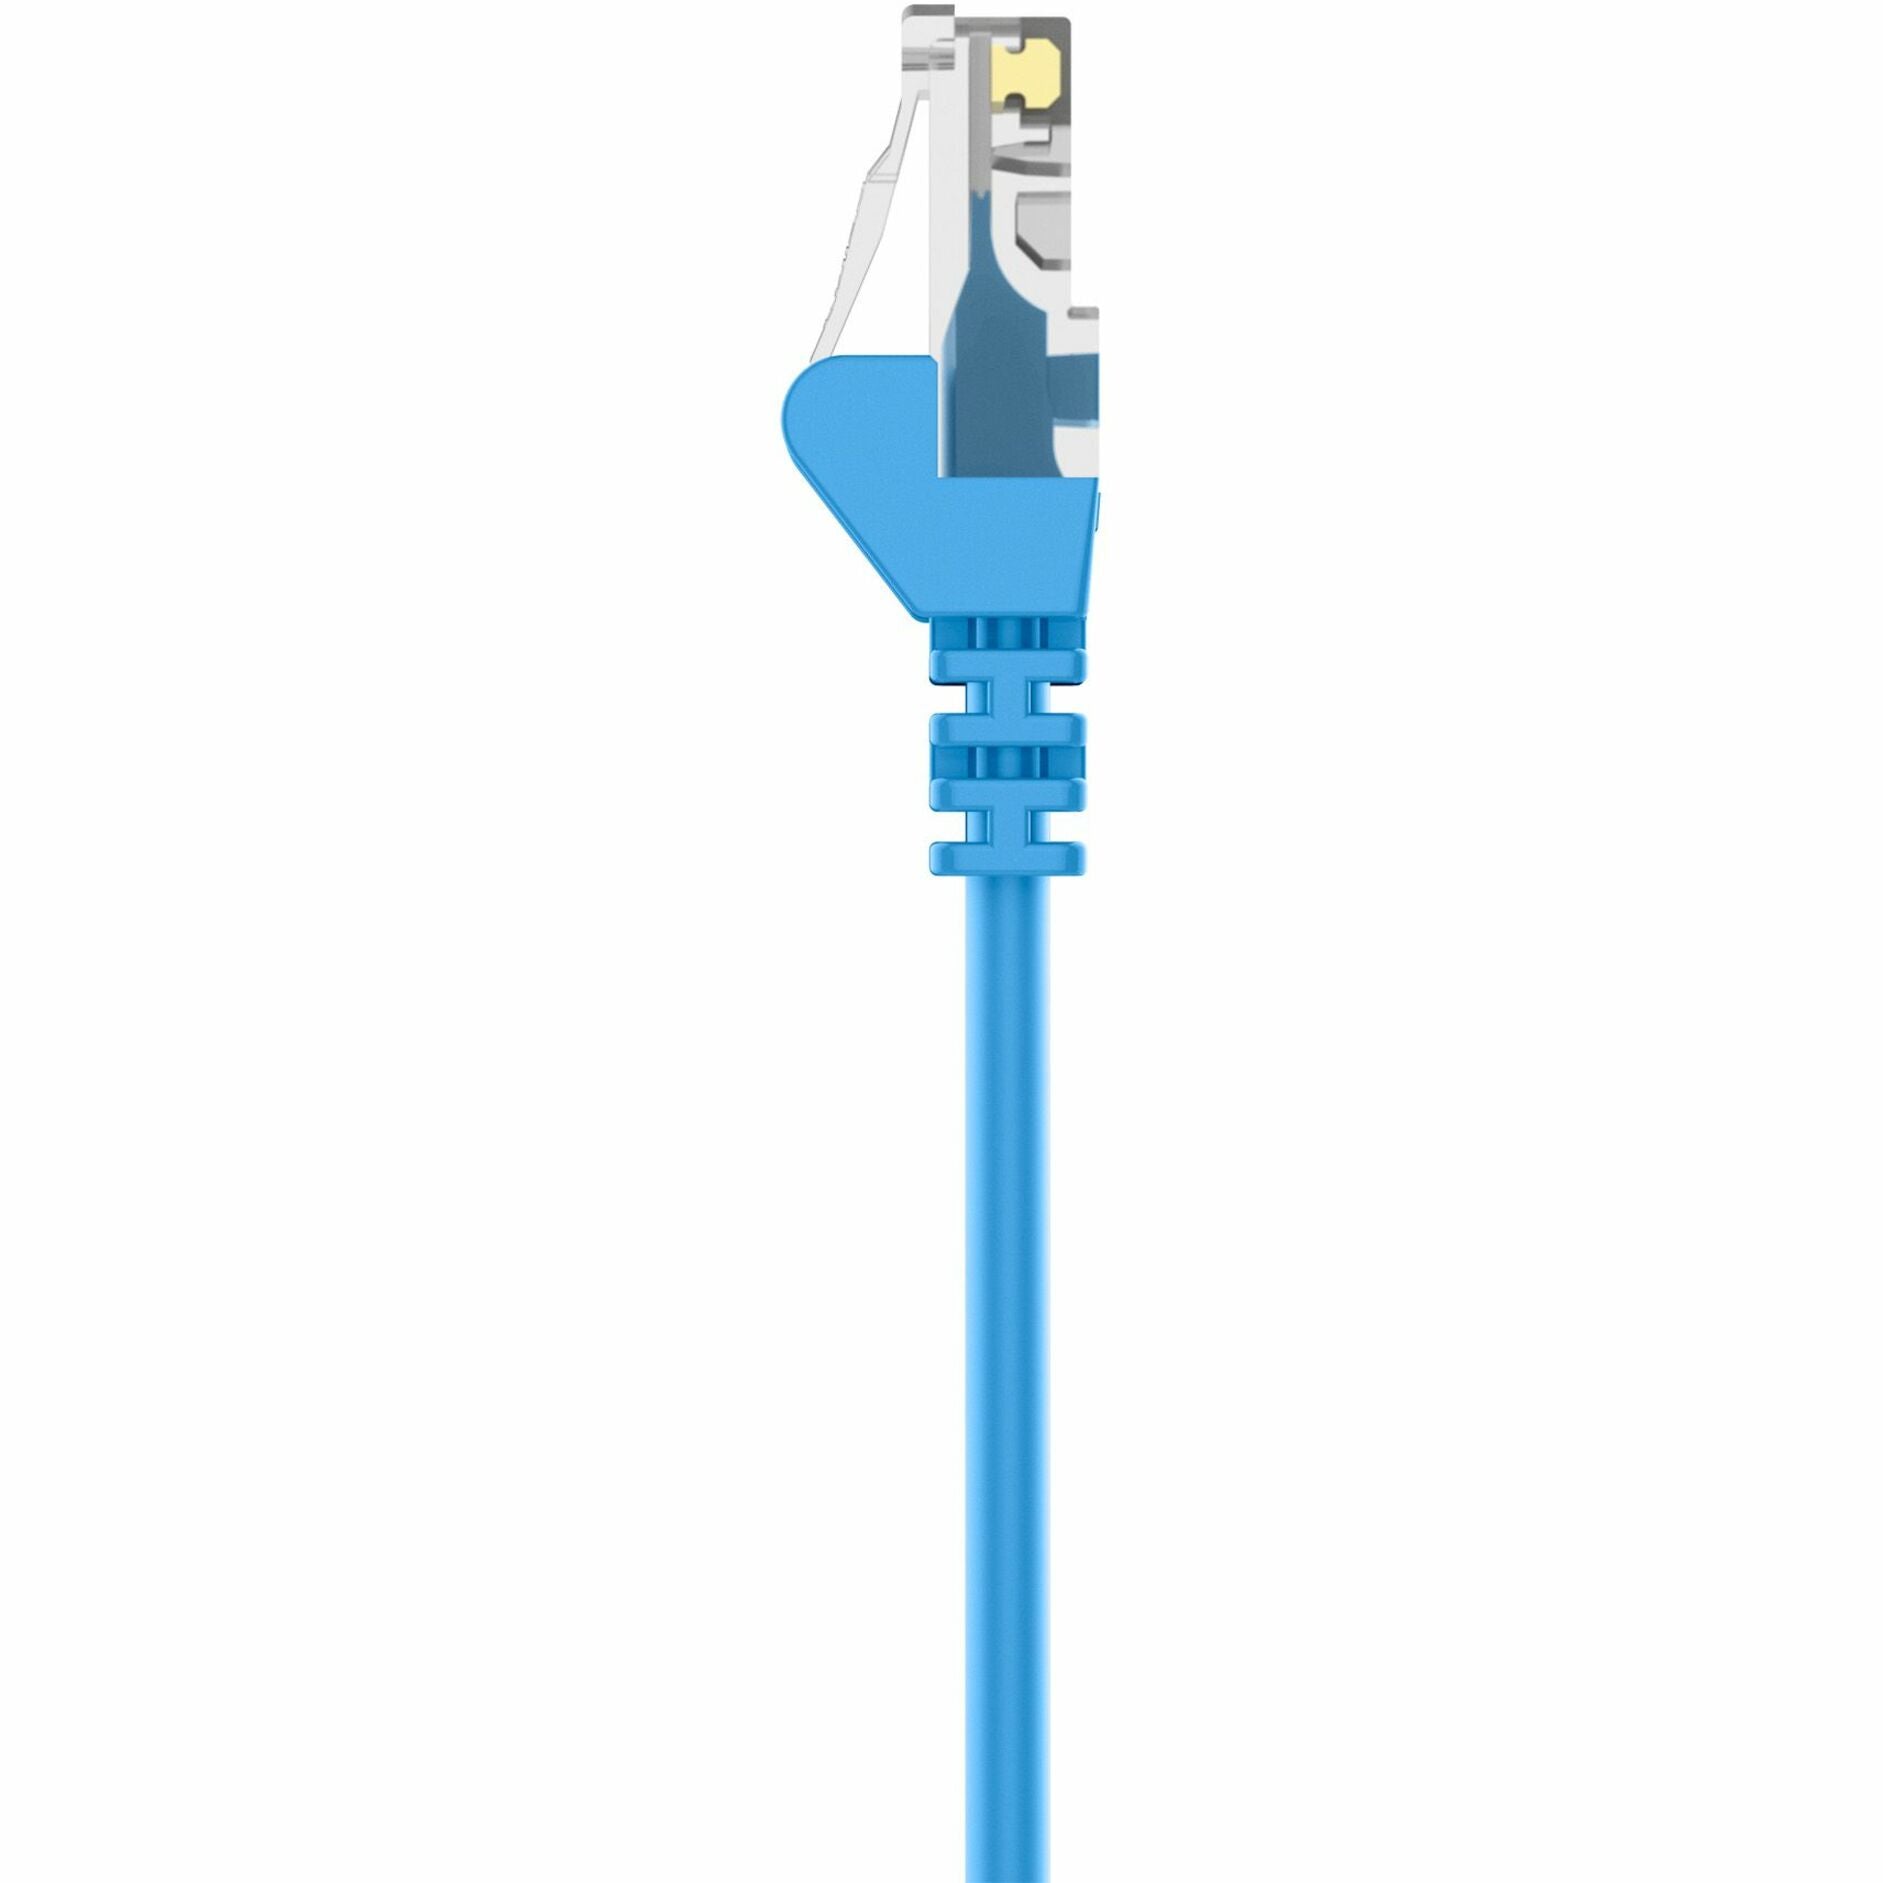 百令 A3X126-15-BLU-S Cat5e 交叉电缆，15英尺，蓝色，终身保修 百令